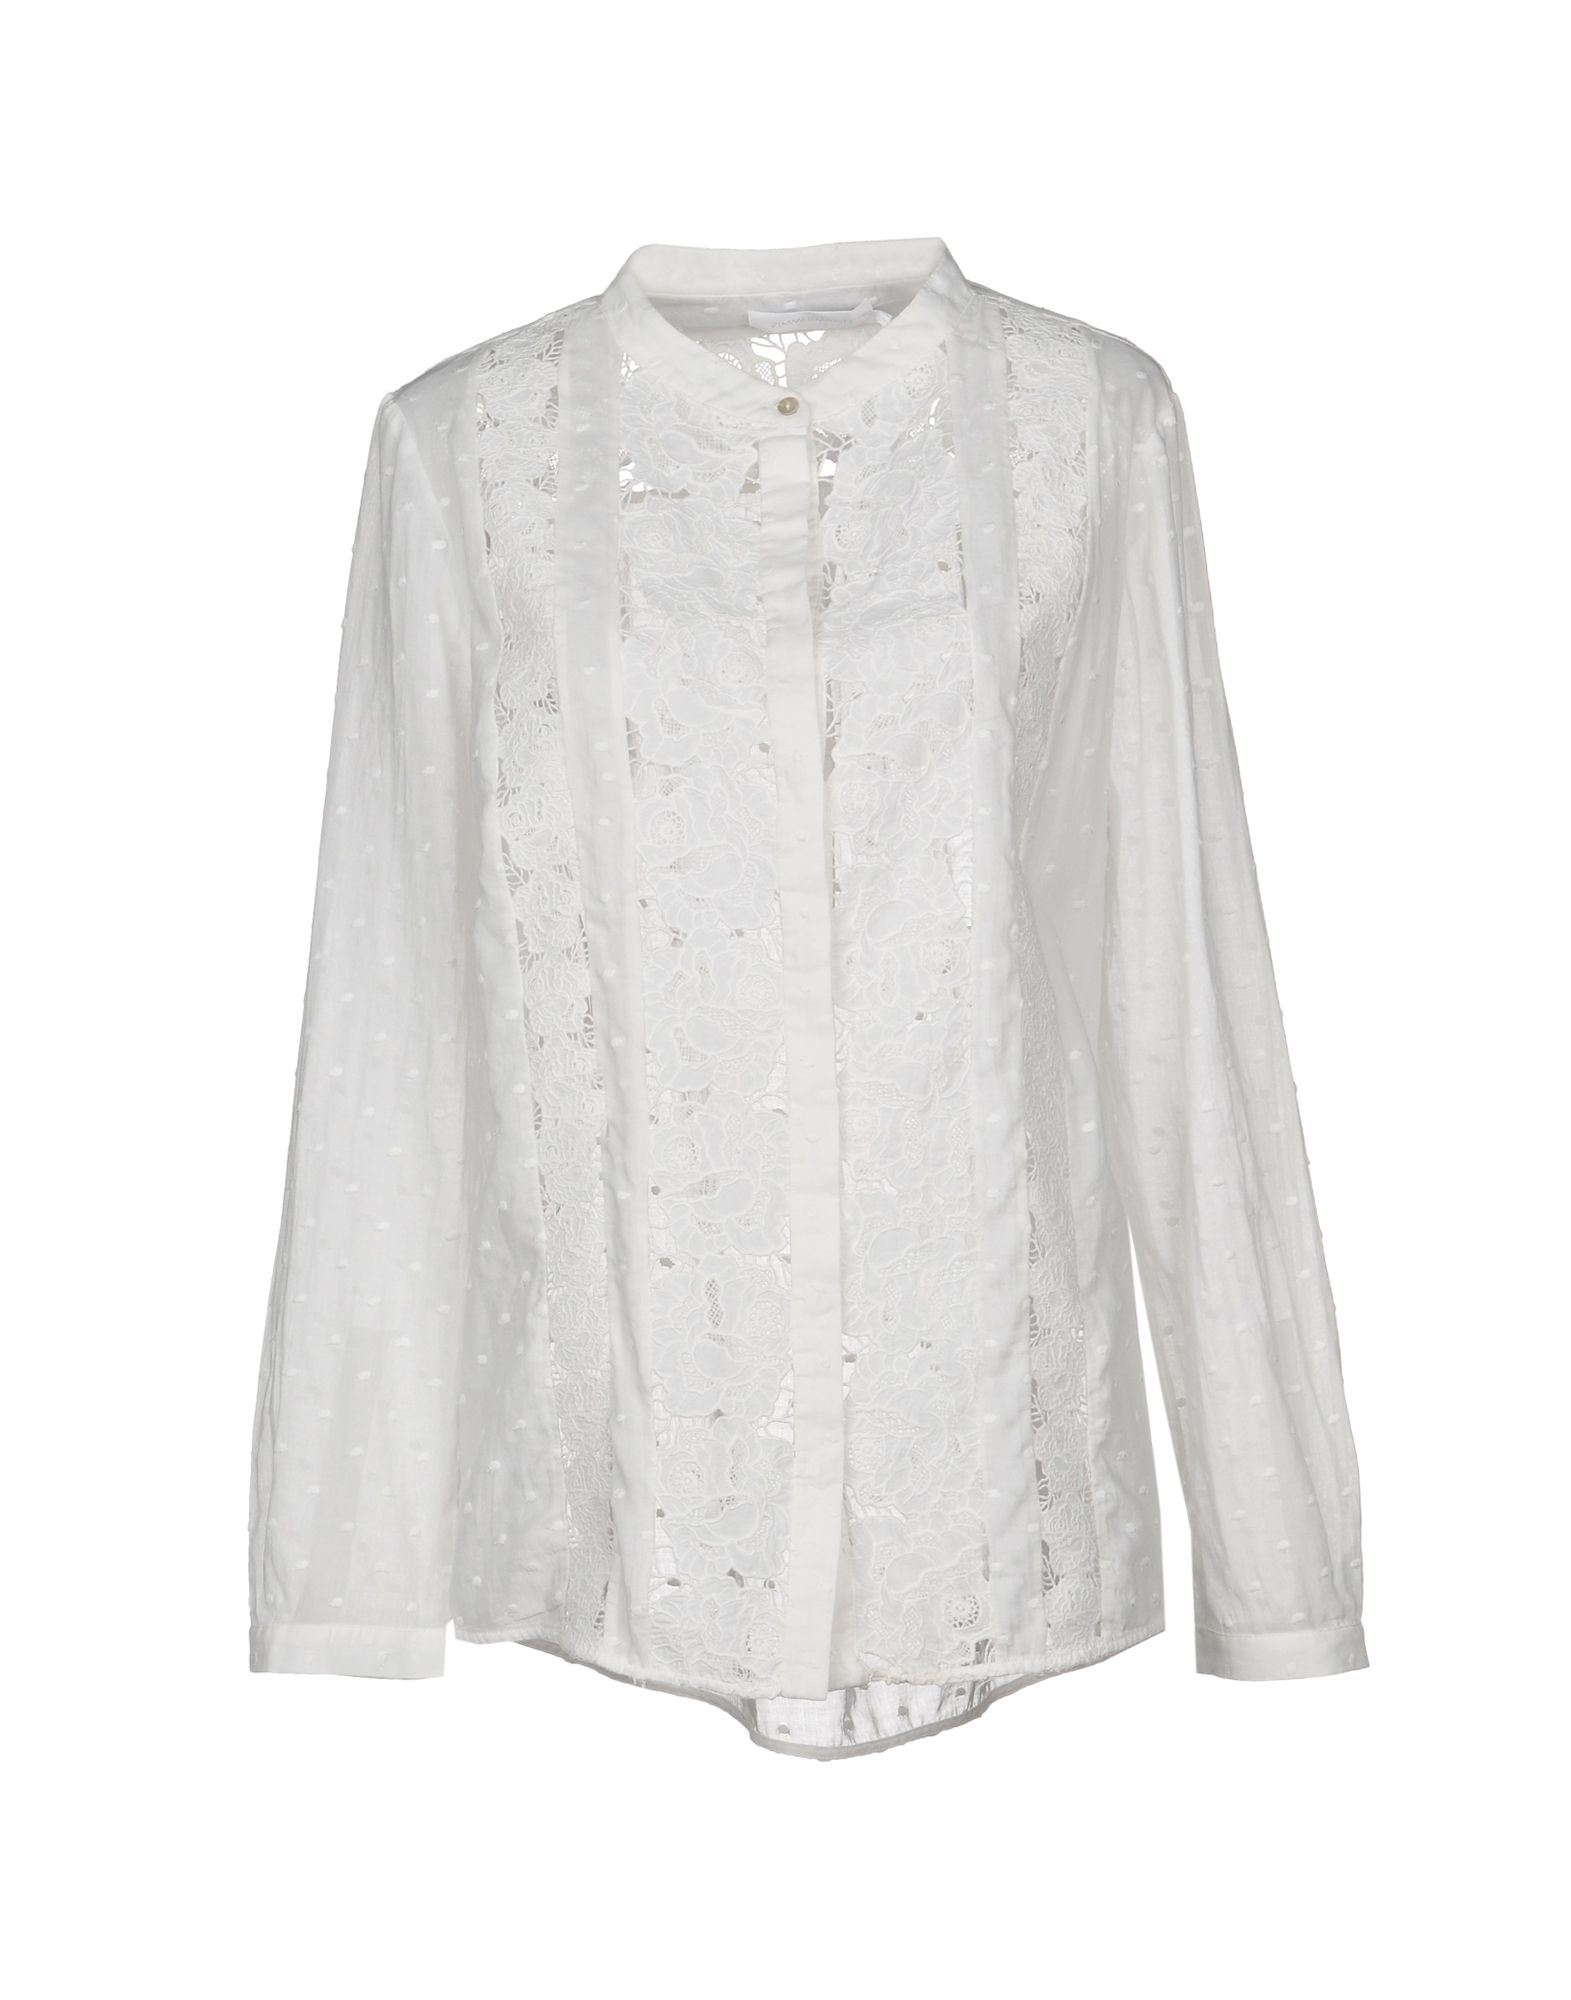 ZIMMERMANN Lace shirts & blouses,38736517DT 1